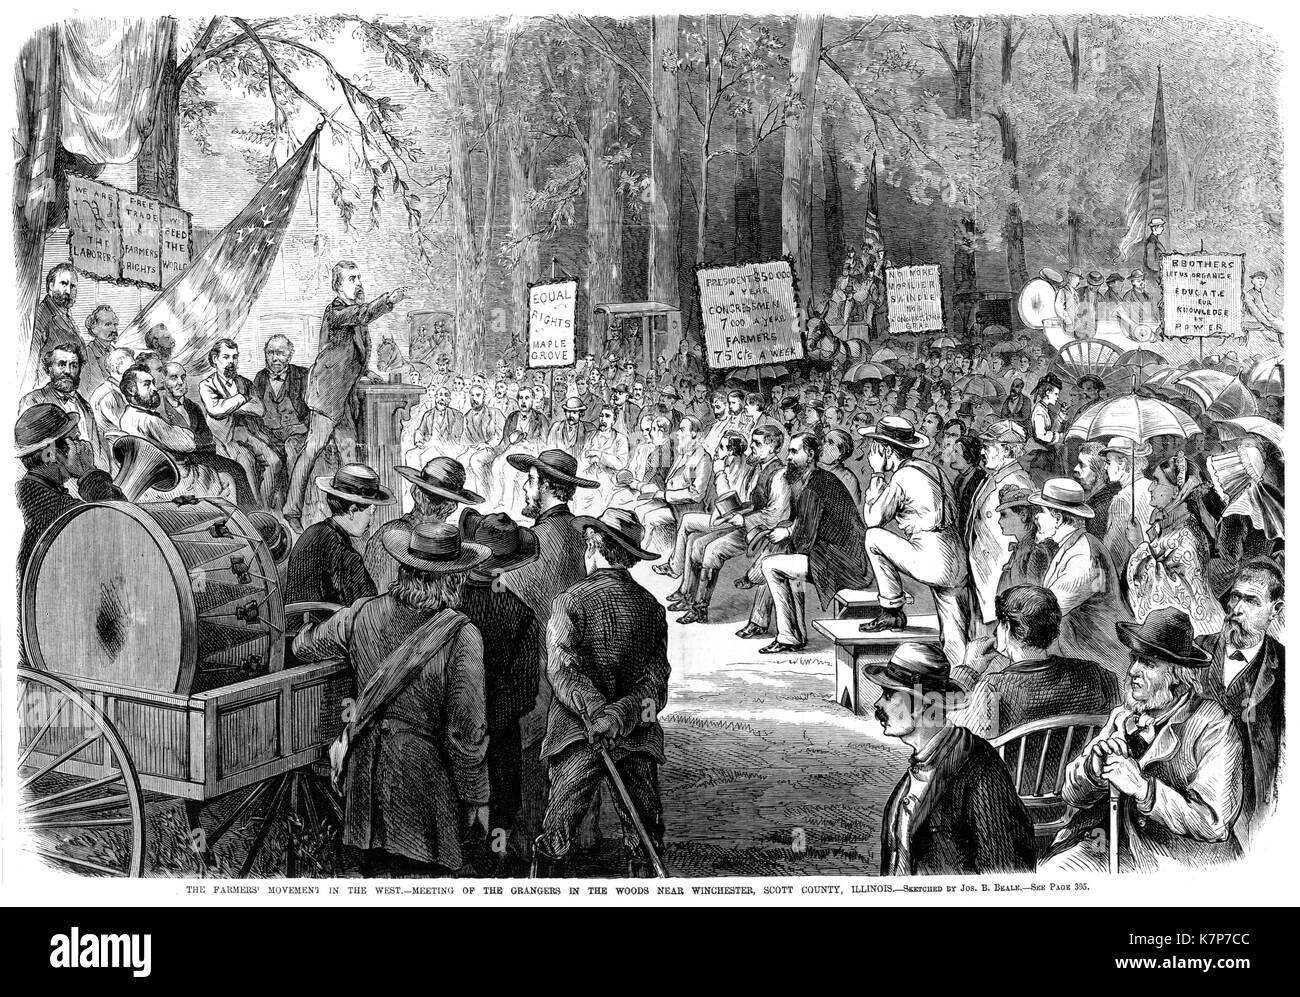 Gli agricoltori' movimento in Occidente - Illustrazione di una riunione Grangers nelle zone rurali Illinois da Frank Leslie illustrato giornale, Wincester, Illinois, 1873. Foto Stock